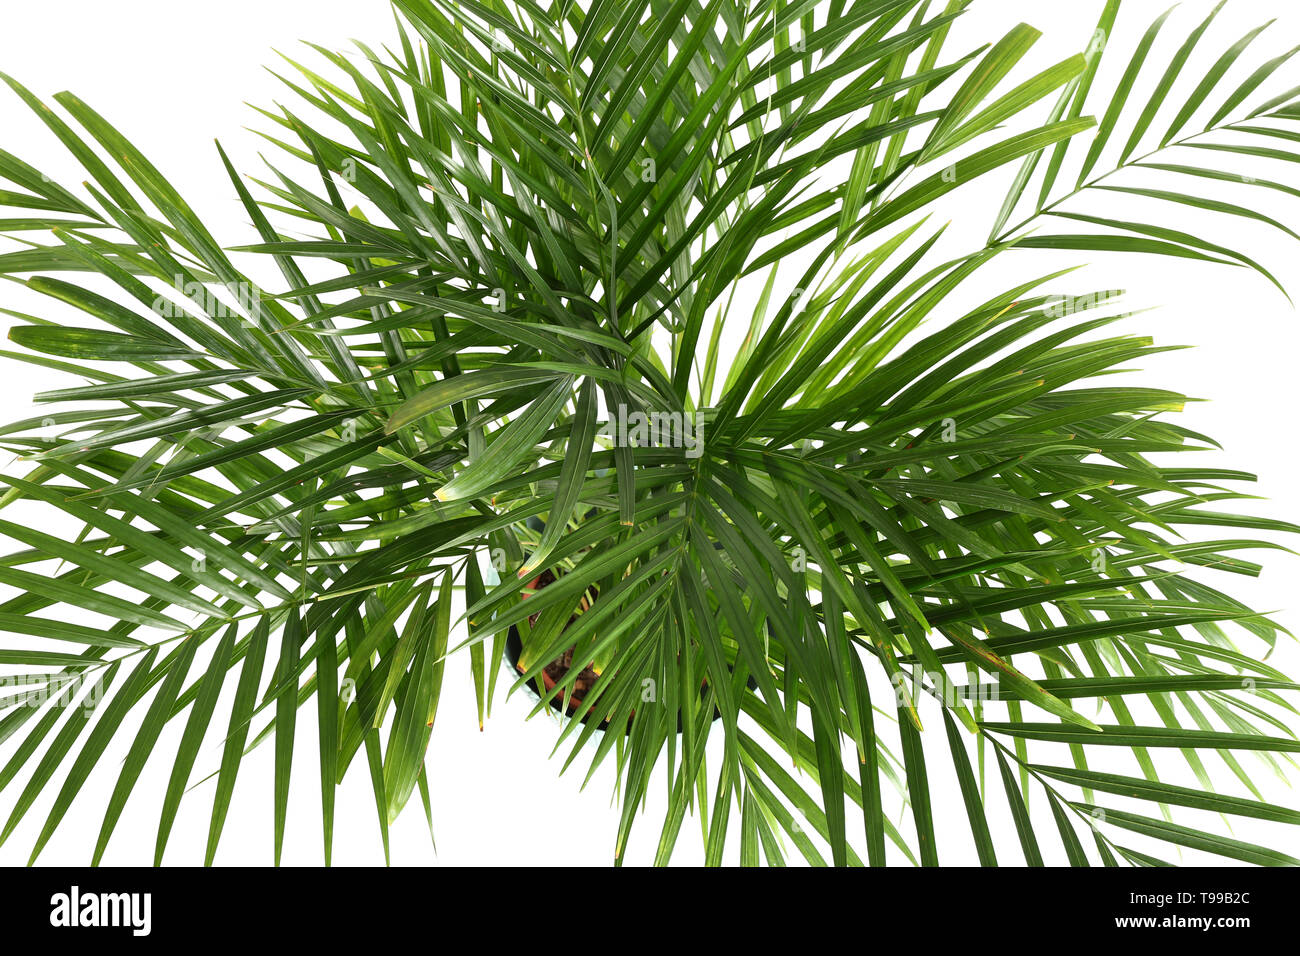 Decorative Areca palm on white background Stock Photo